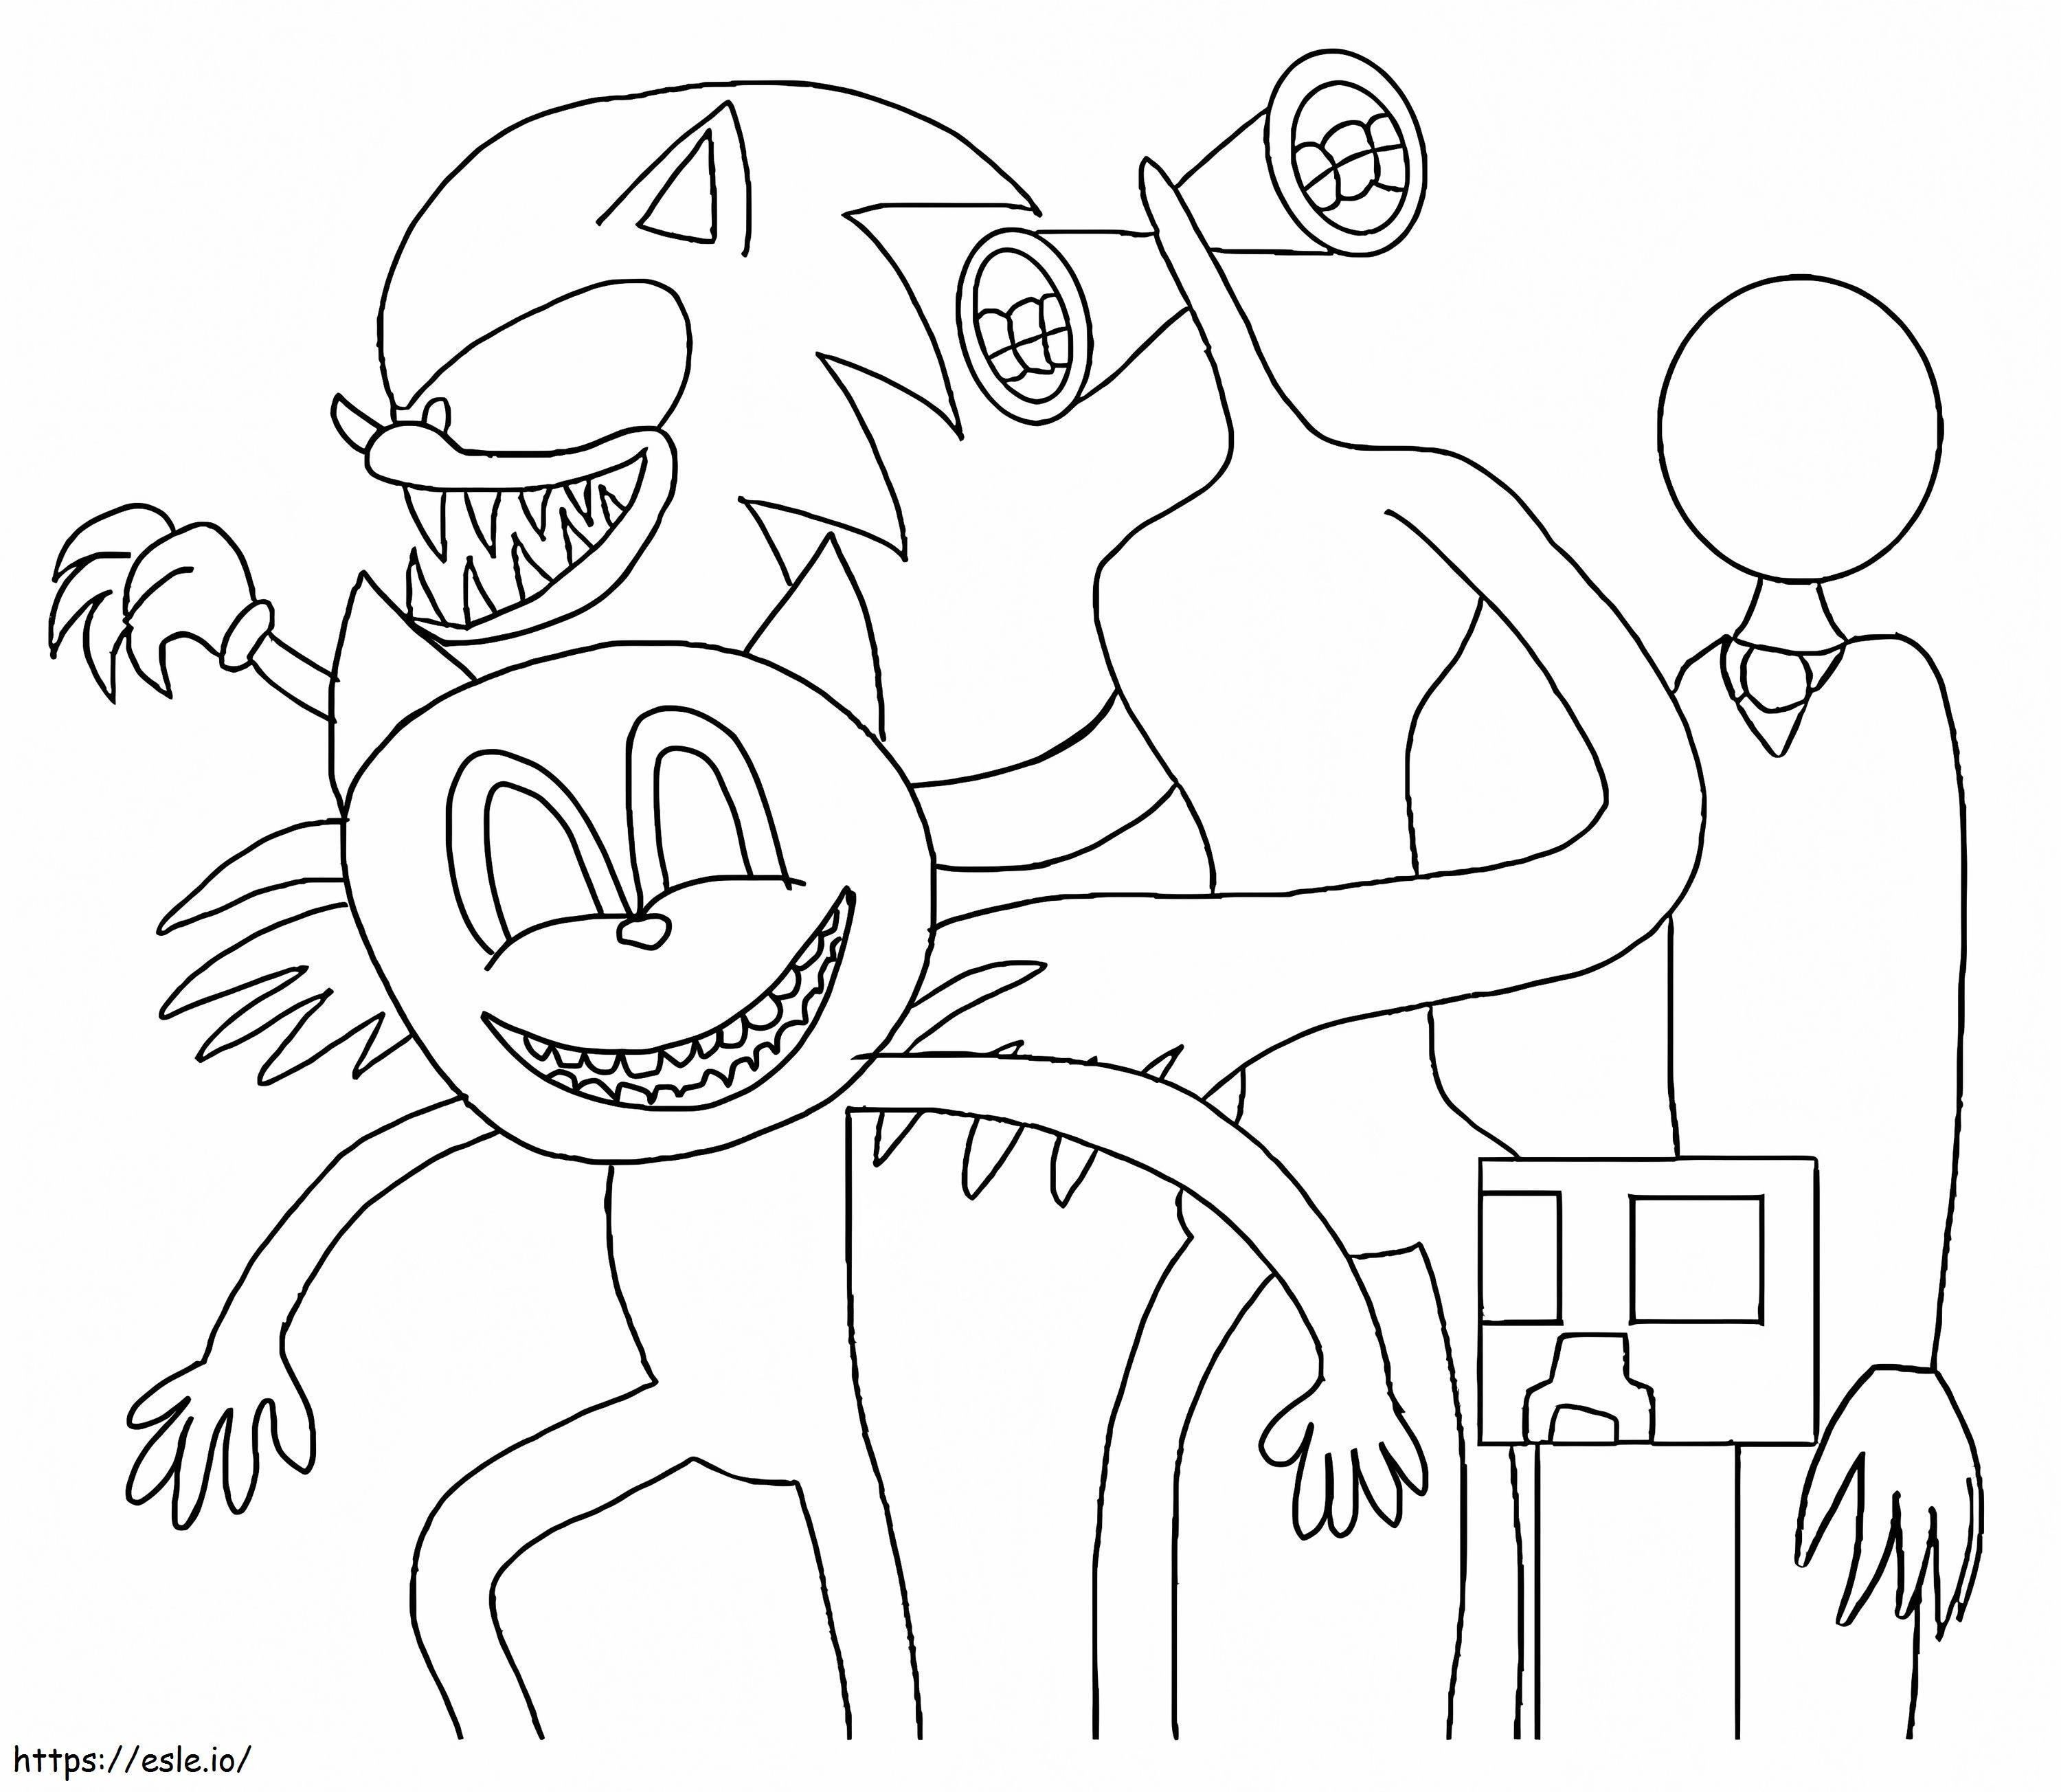 Gato de desenho animado e monstros para colorir